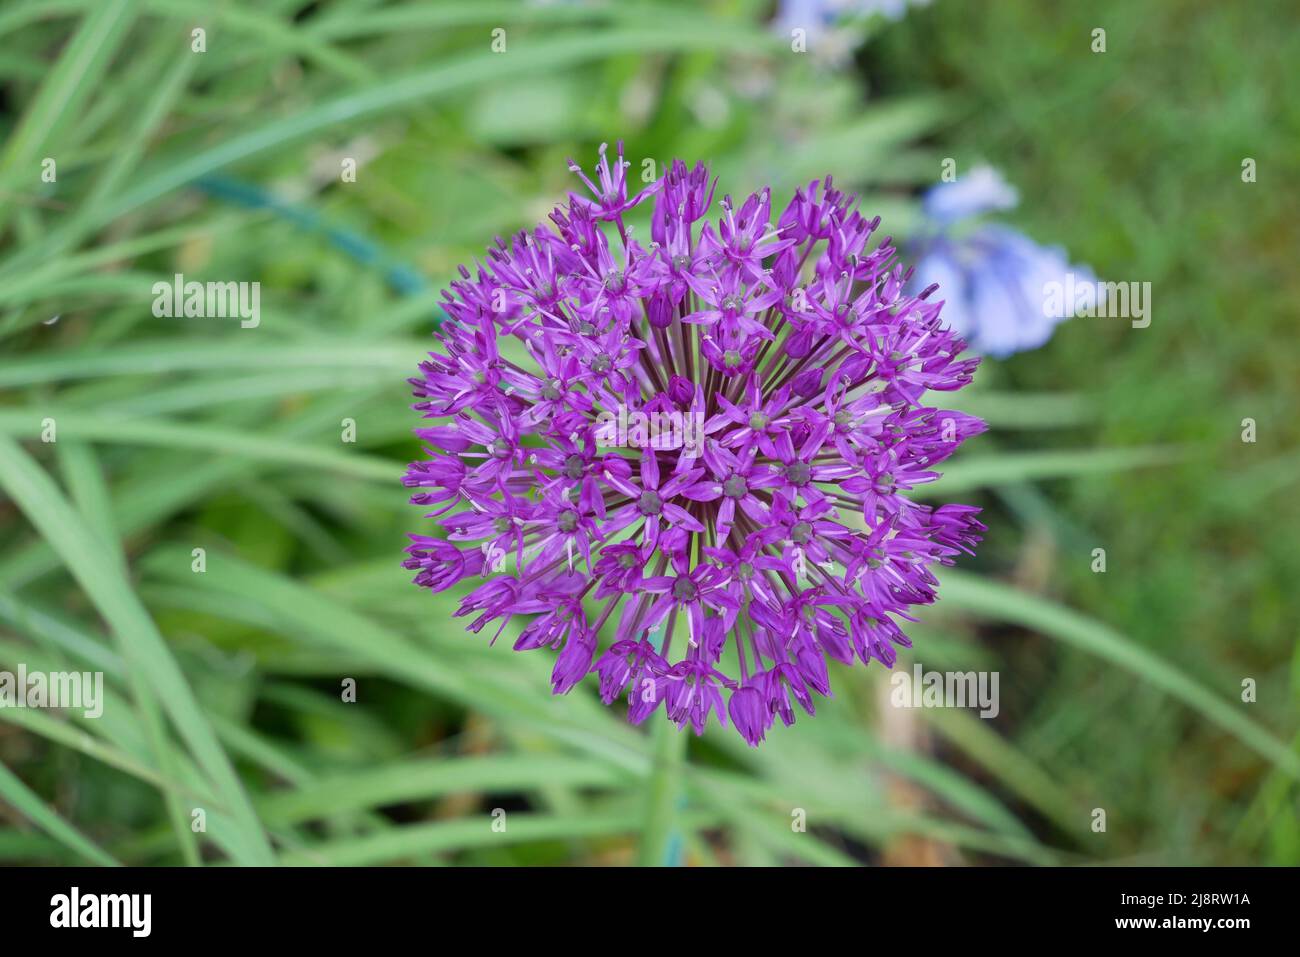 Allium Purple sensation in full bloom Stock Photo